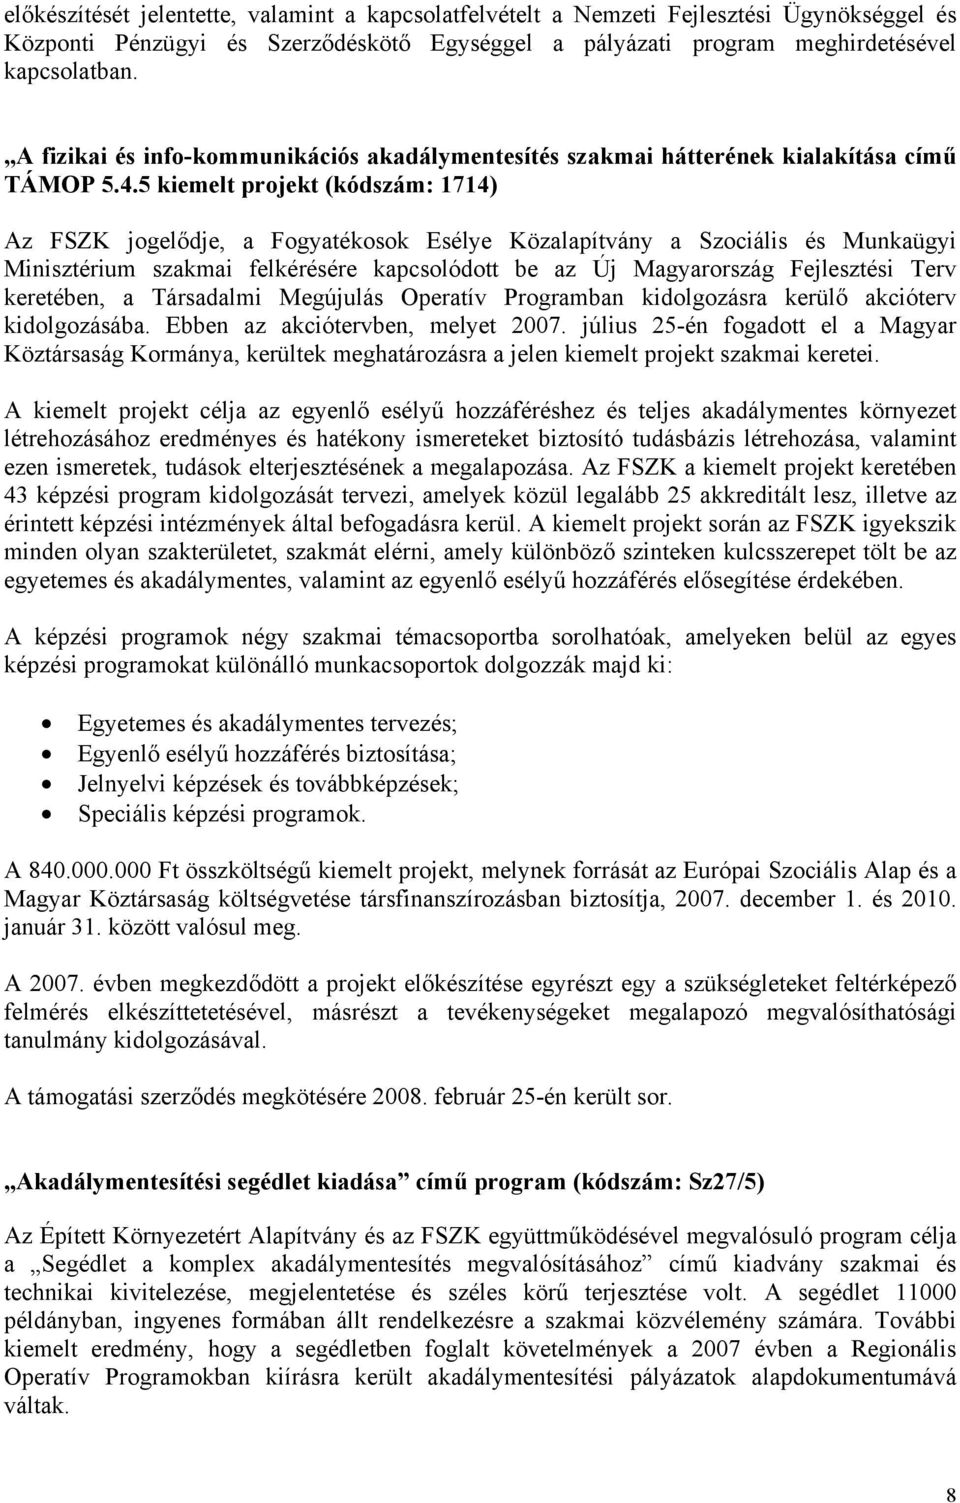 5 kiemelt projekt (kódszám: 1714) Az FSZK jogelődje, a Fogyatékosok Esélye Közalapítvány a Szociális és Munkaügyi Minisztérium szakmai felkérésére kapcsolódott be az Új Magyarország Fejlesztési Terv